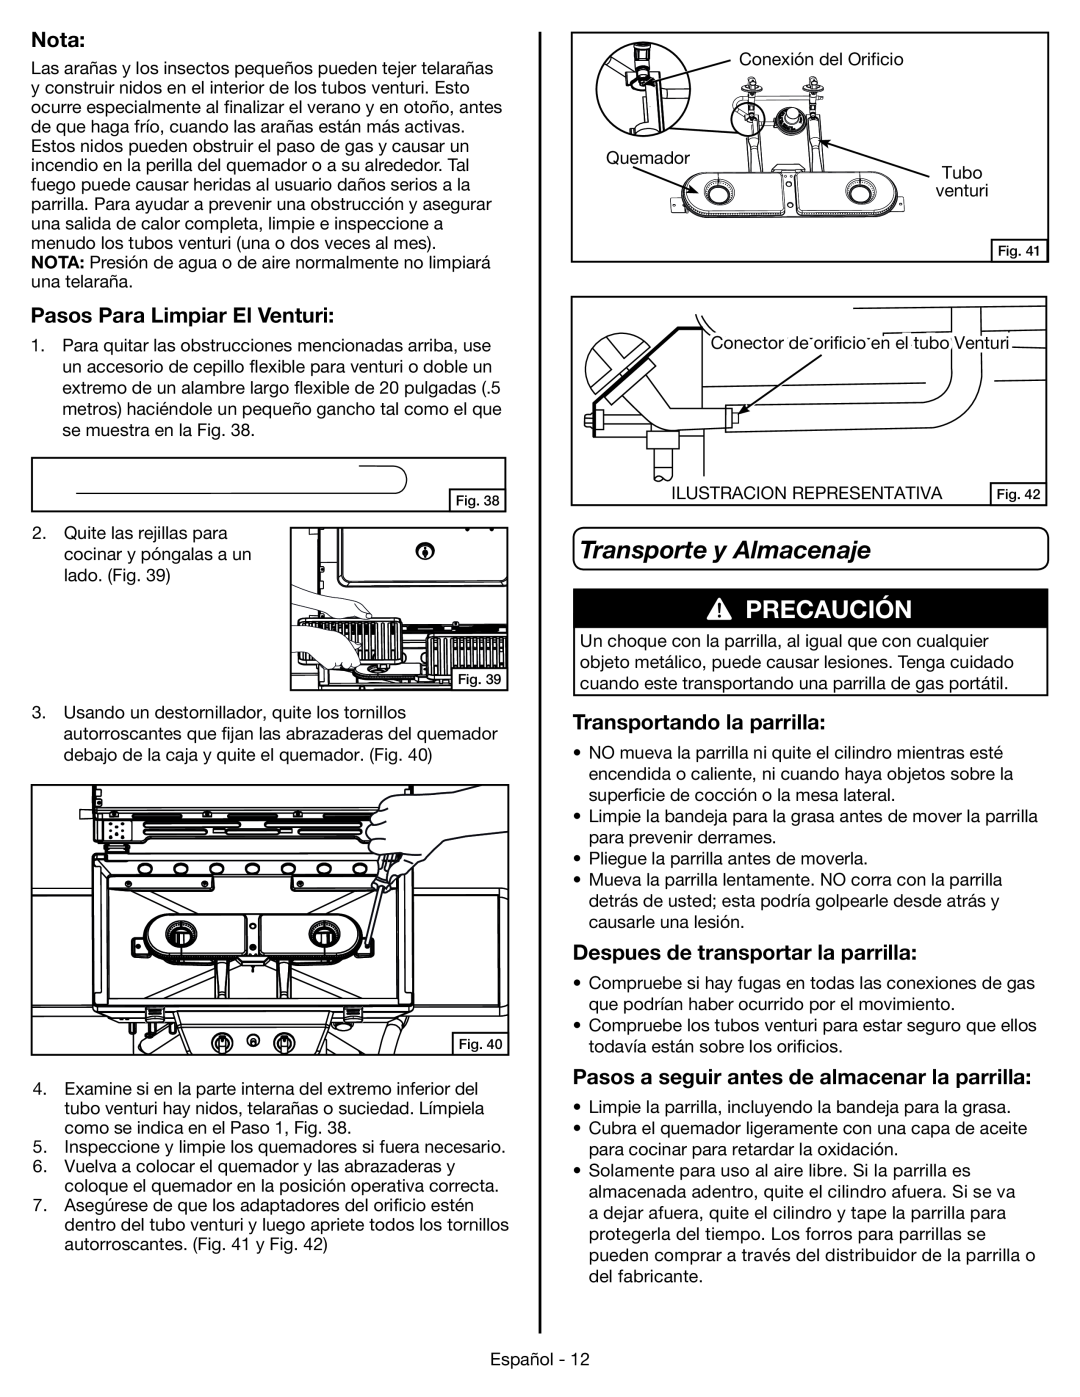 Coleman 9959 manual Transporte y Almacenaje, Pasos Para Limpiar El Venturi, Transportando la parrilla, Precaución, Nota 